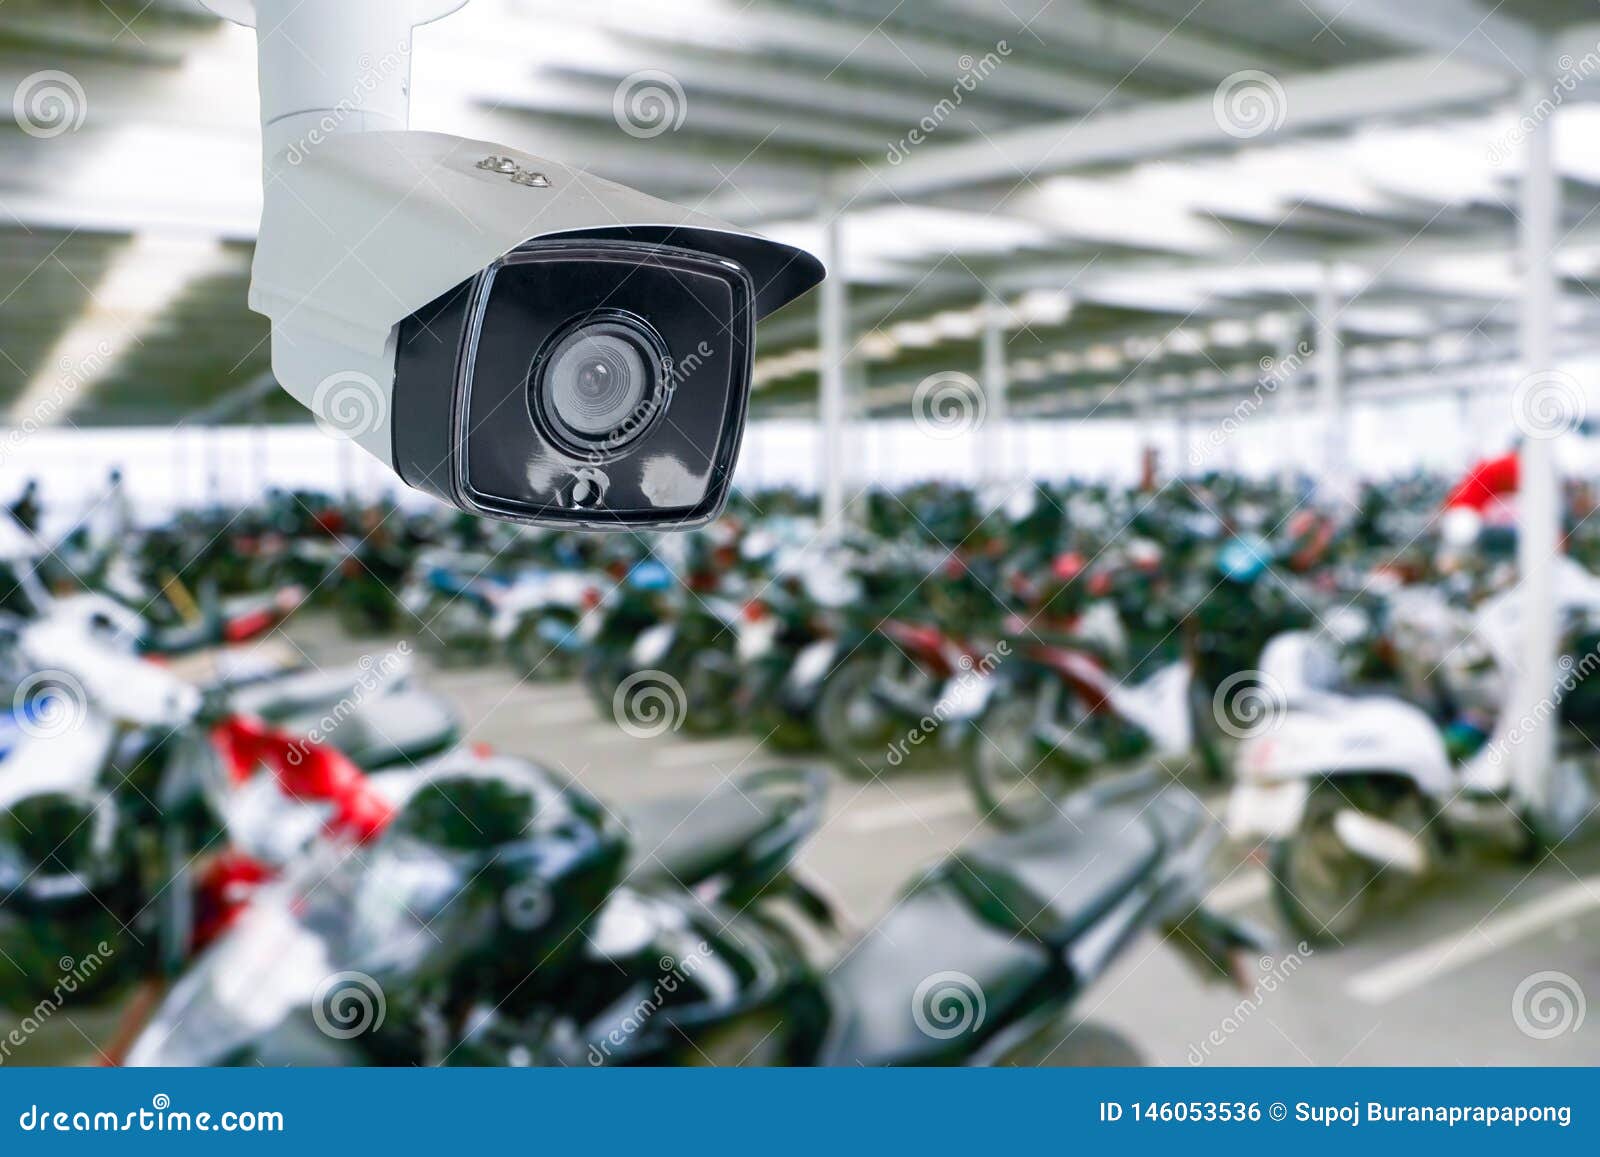 Las Cámaras De Seguridad Son Cámaras CCTV De Circuito Cerrado Que Transmiten Una Señal De Vídeo Y Audio Una Cámara Foto de archivo - Imagen de industria, proteja: 146053536